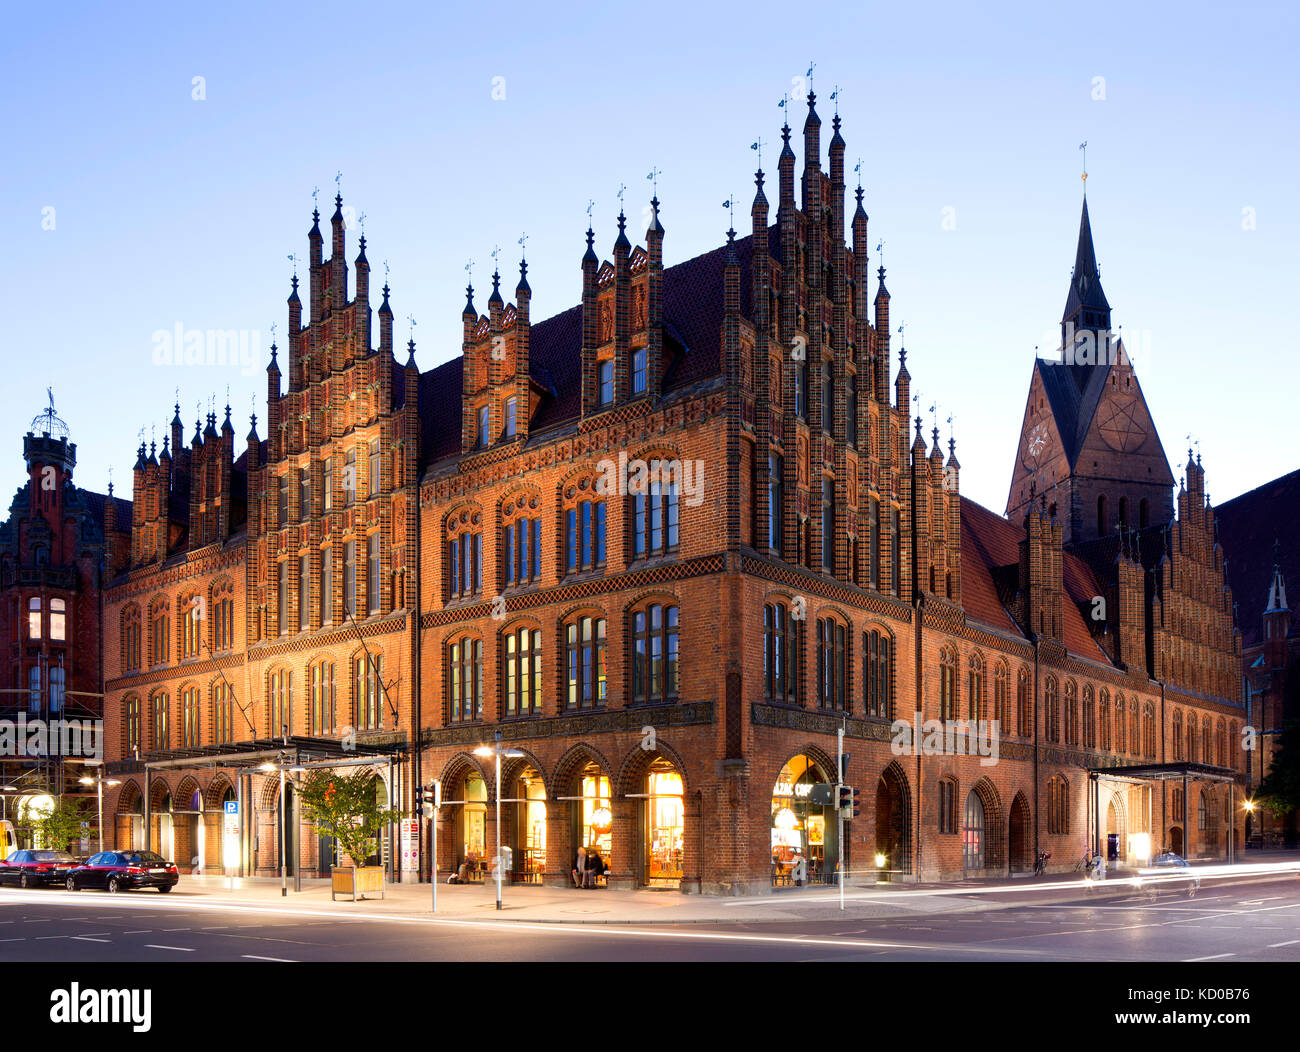 Old town hall, crépuscule, le nord de l'allemand gothique en brique, Hanovre, Basse-Saxe, Allemagne Banque D'Images